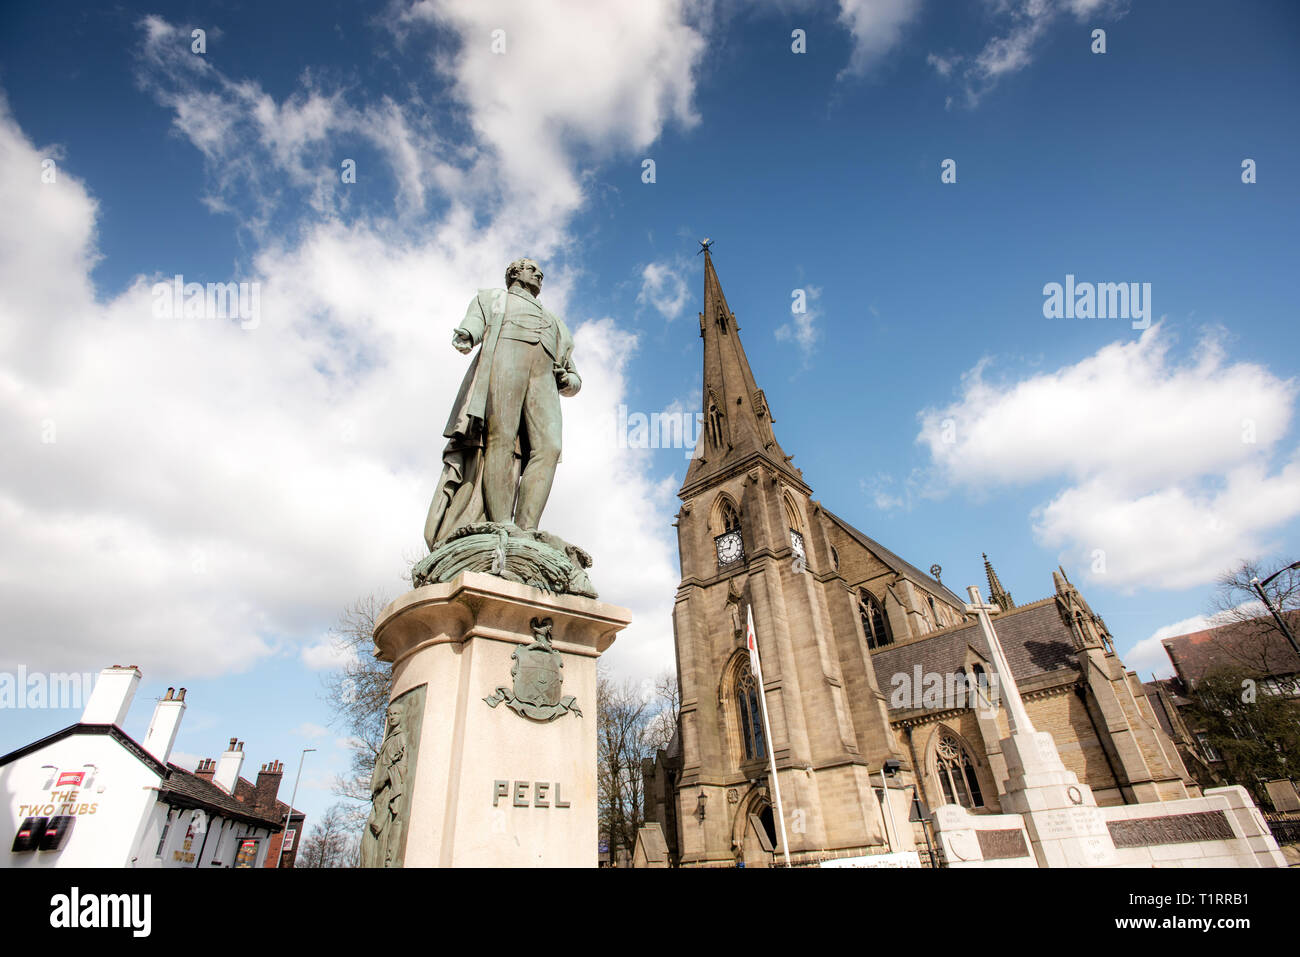 Sir Robert Peel Statue mit der Pfarrkirche St. Maria, der Jungfrau, im Hintergrund. Bury, Lancashire. Stockfoto